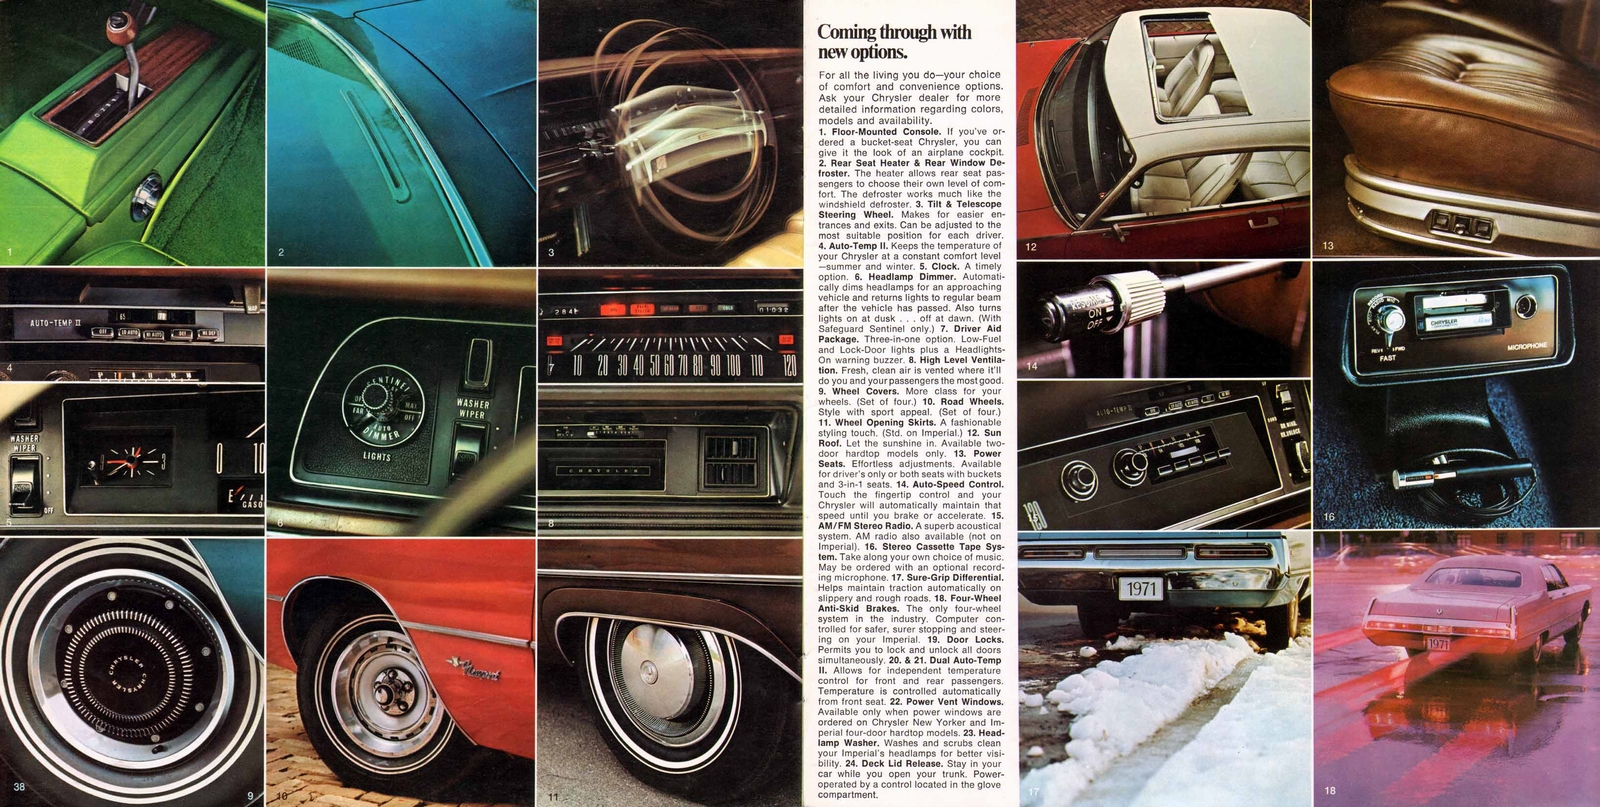 n_1971 Chrysler and Imperial-38-39.jpg